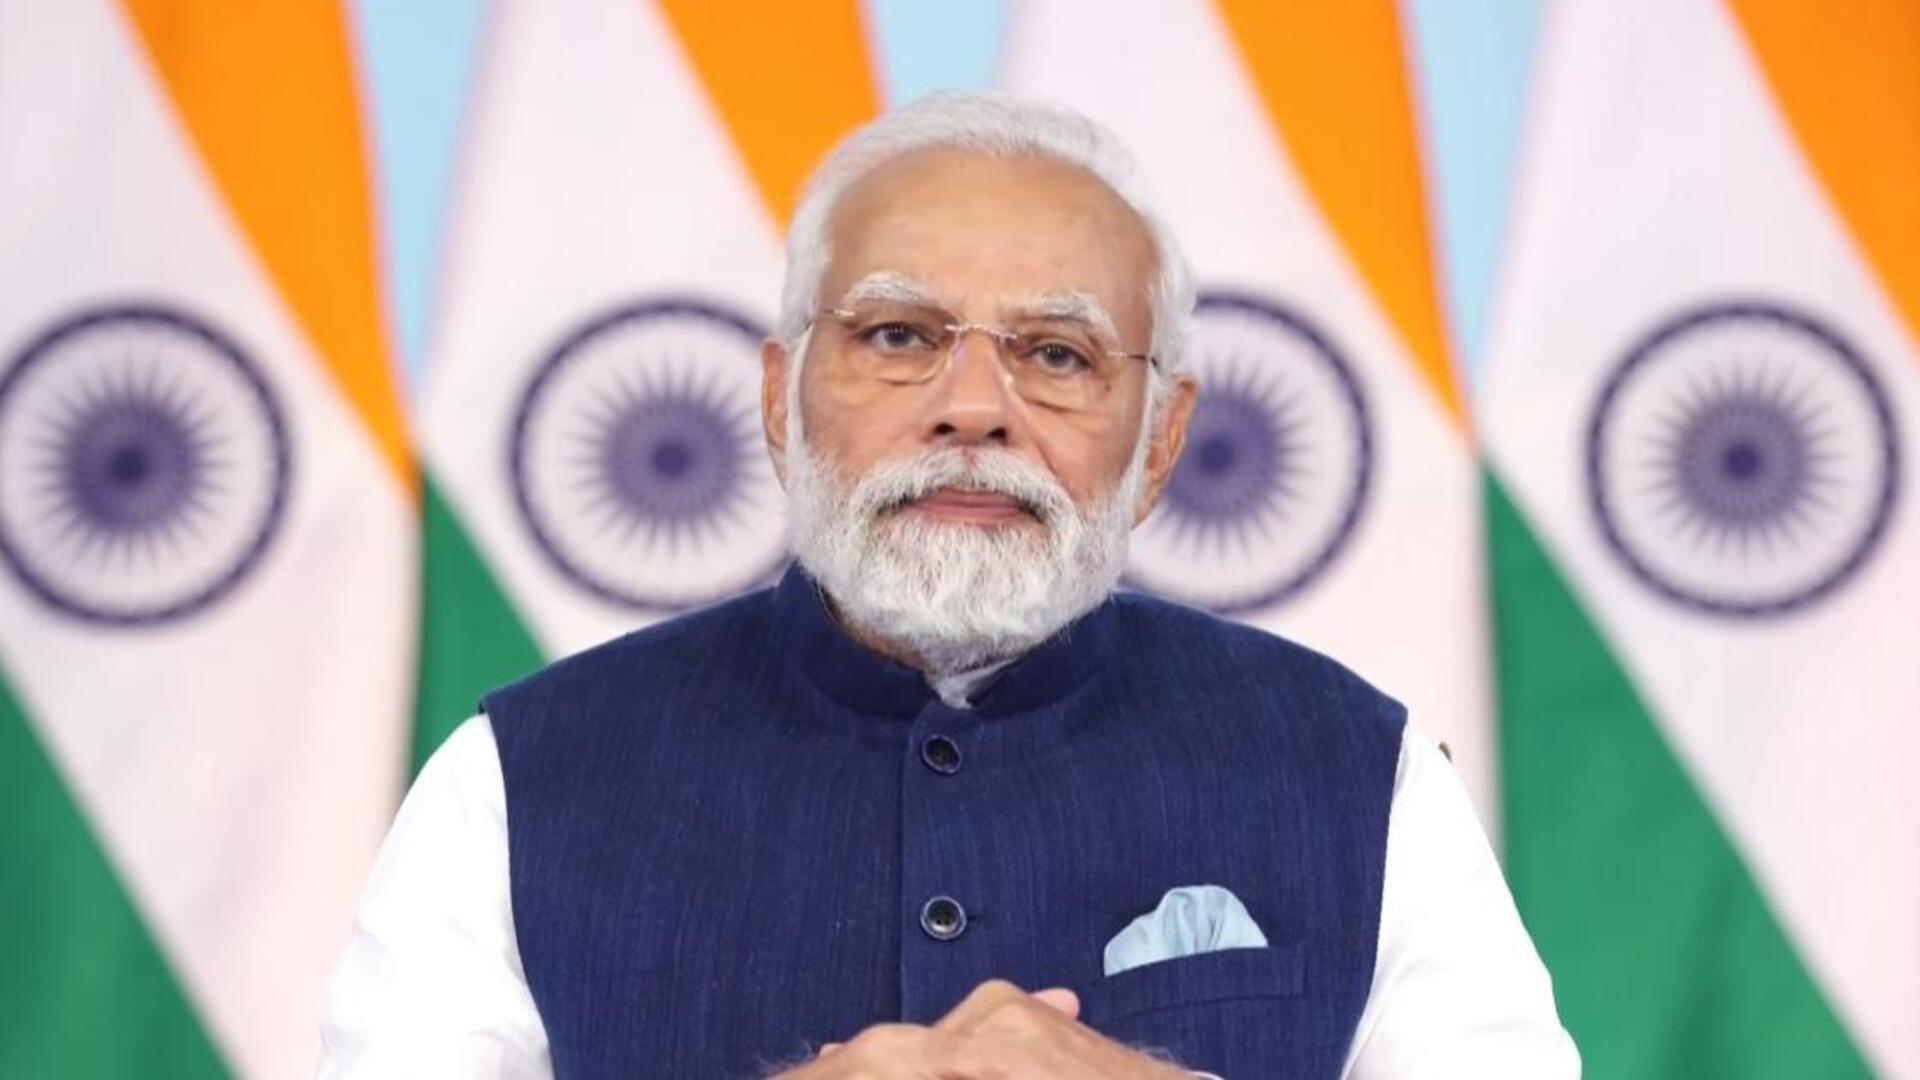 प्रधानमंत्री नरेंद्र मोदी शनिवार को हैदराबाद में करेंगे 11,300 करोड़ रुपये की परियोजनाओं का शिलान्यास